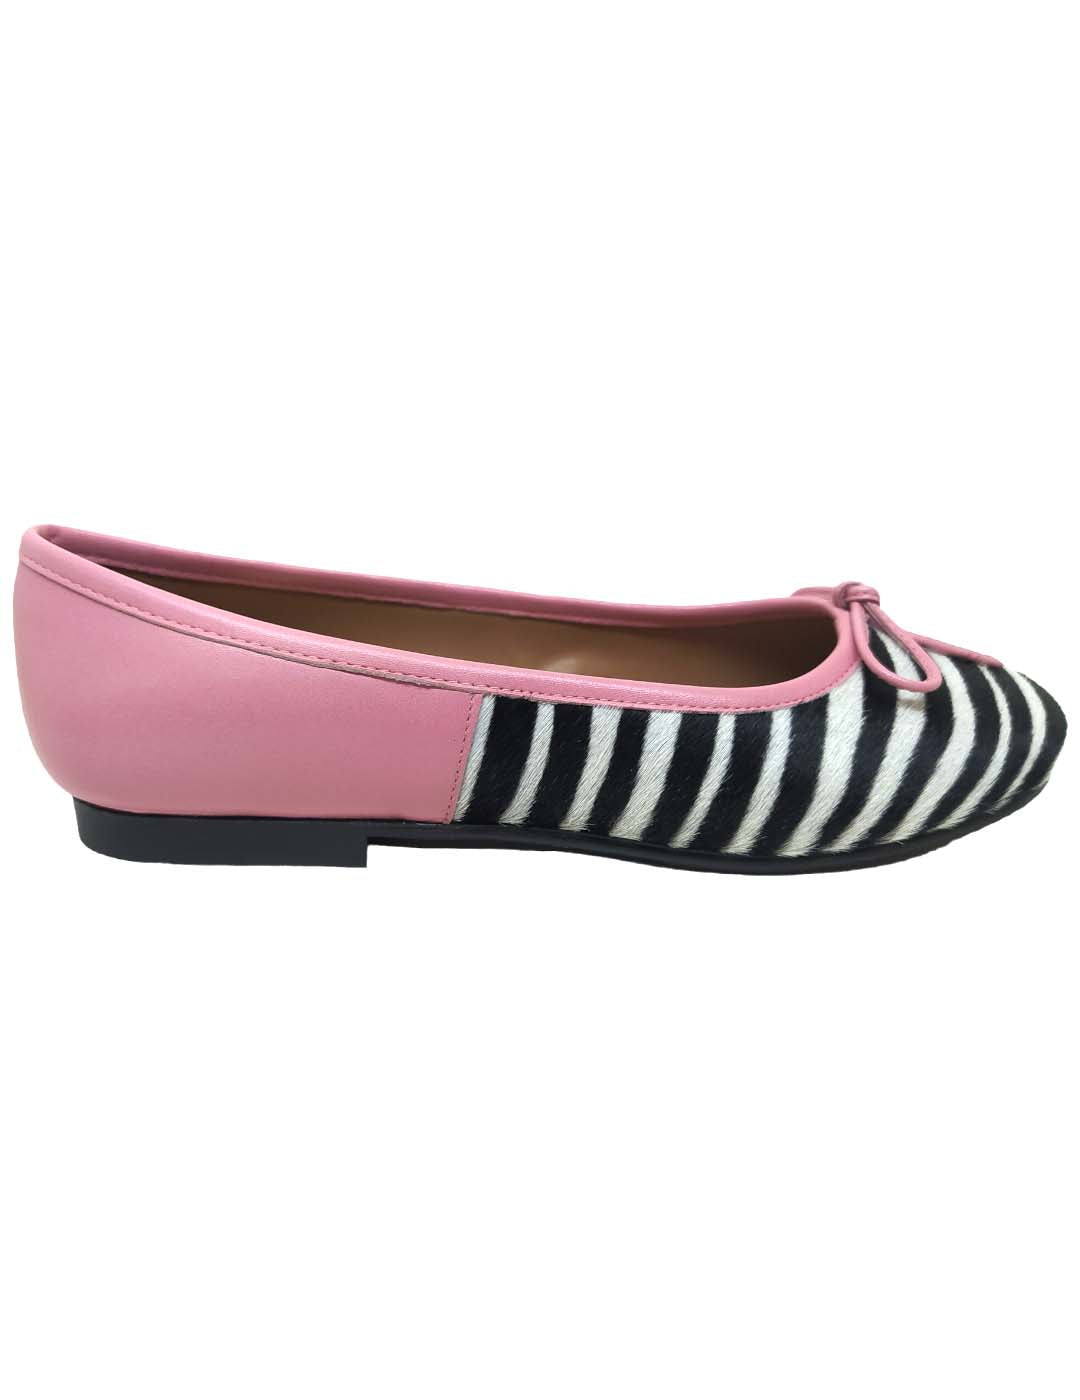 Zapato bailarina 4138 rosa cebra